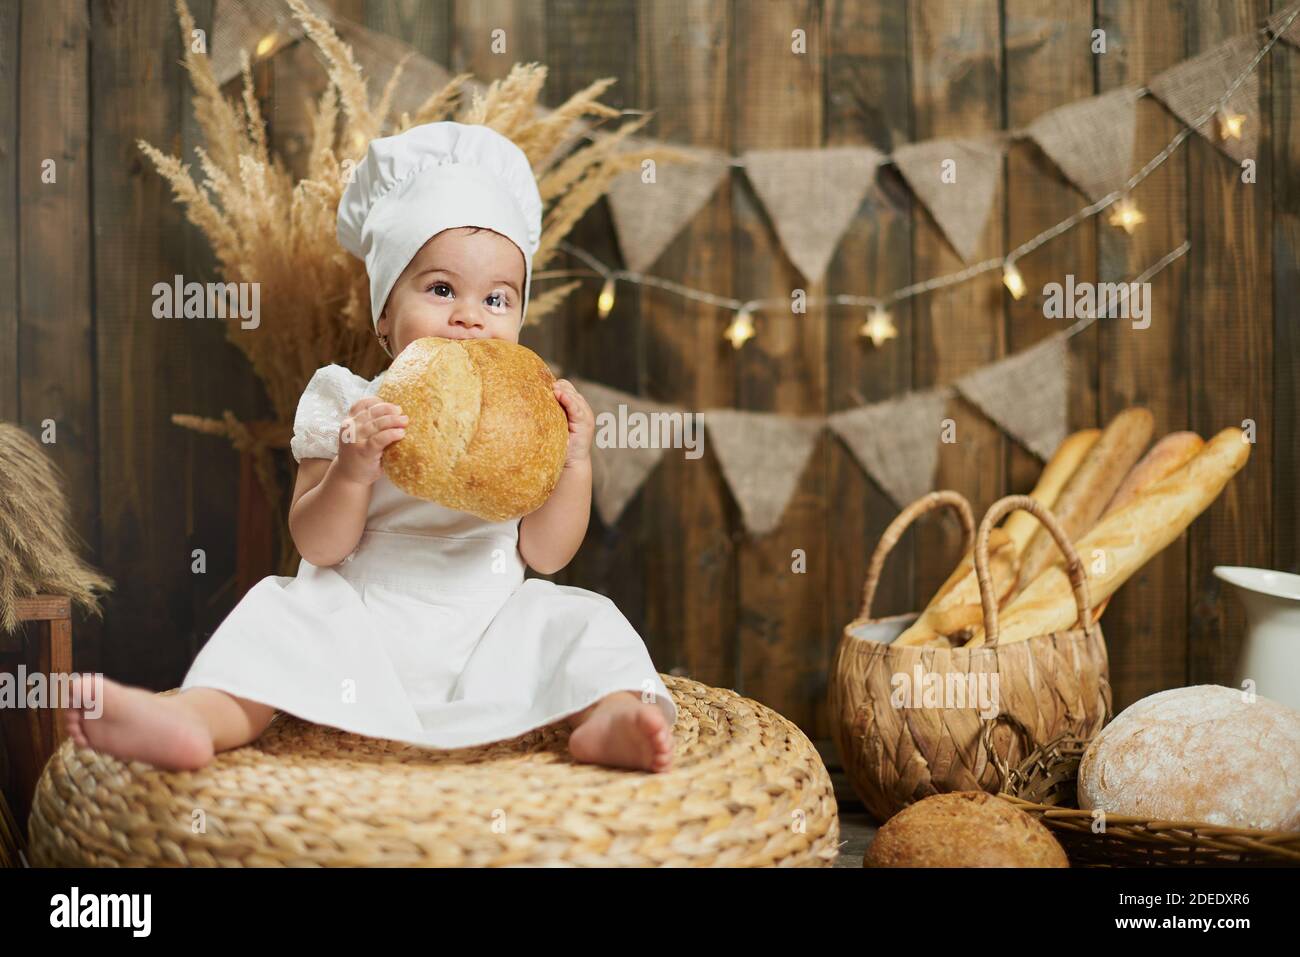 Petite petite petite petite petite petite fille boulangère mangeant du pain frais Banque D'Images